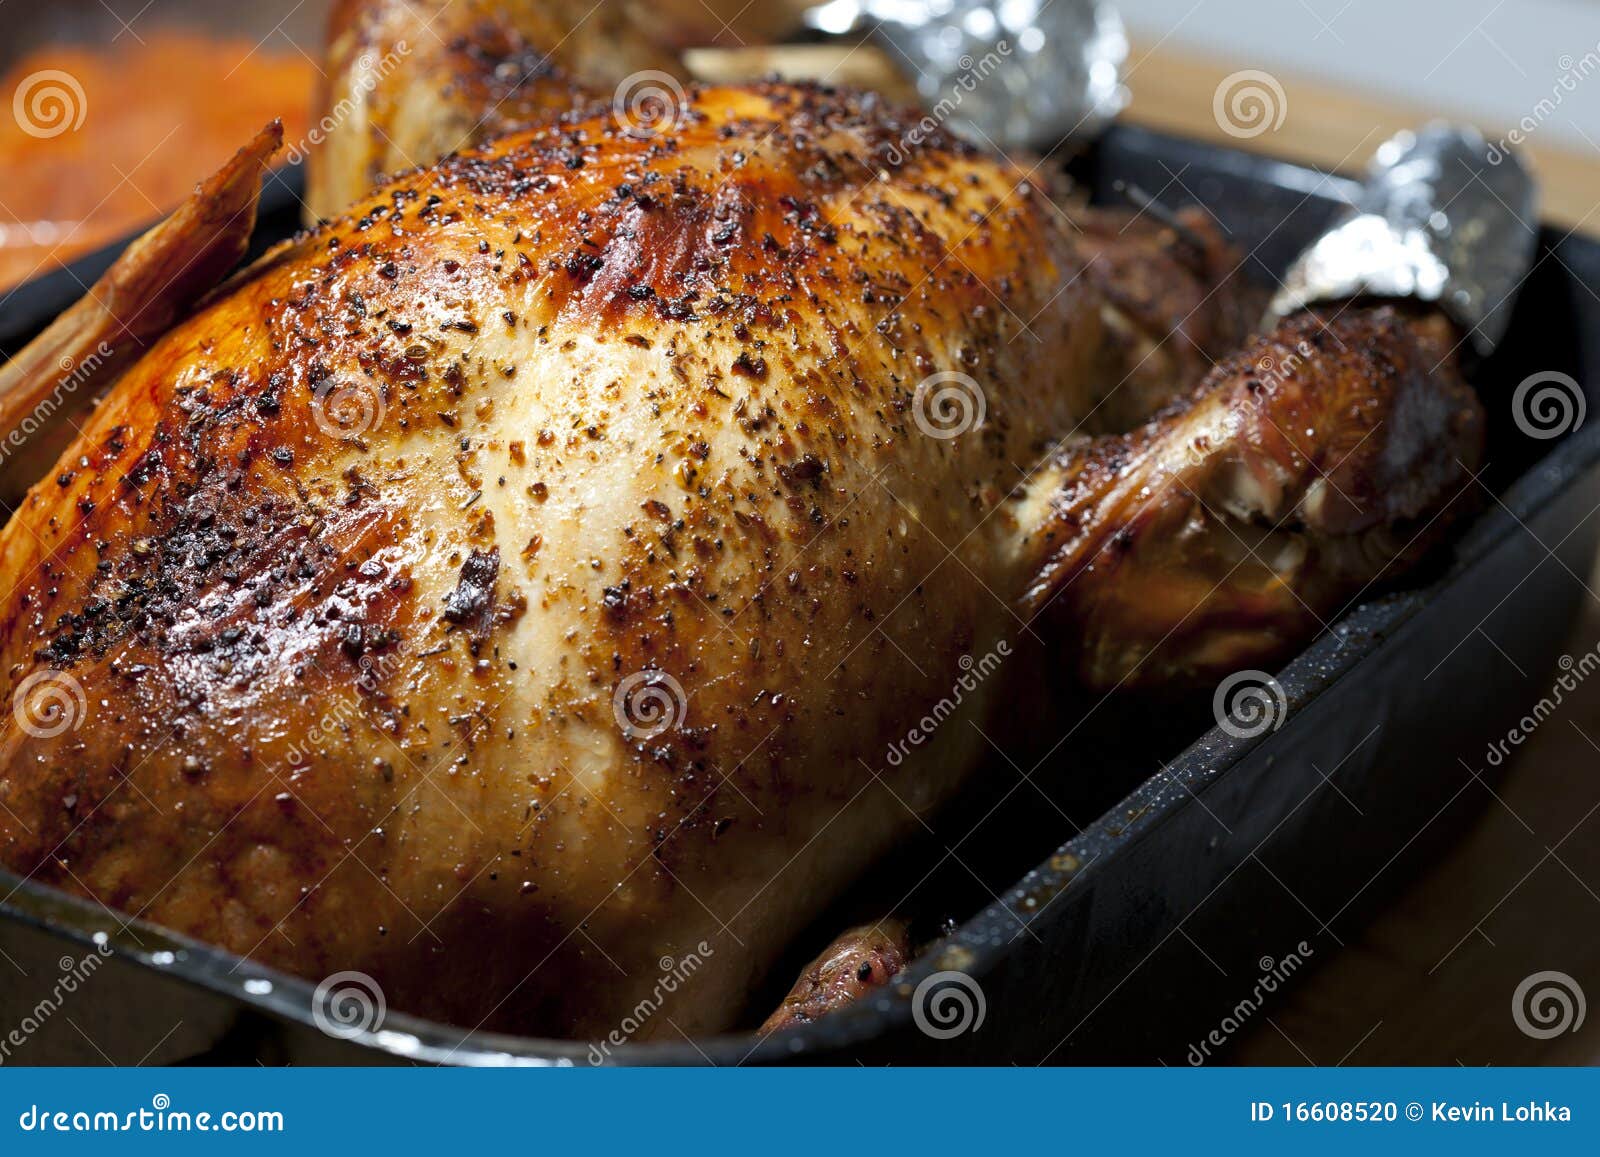 oven roasted turkey